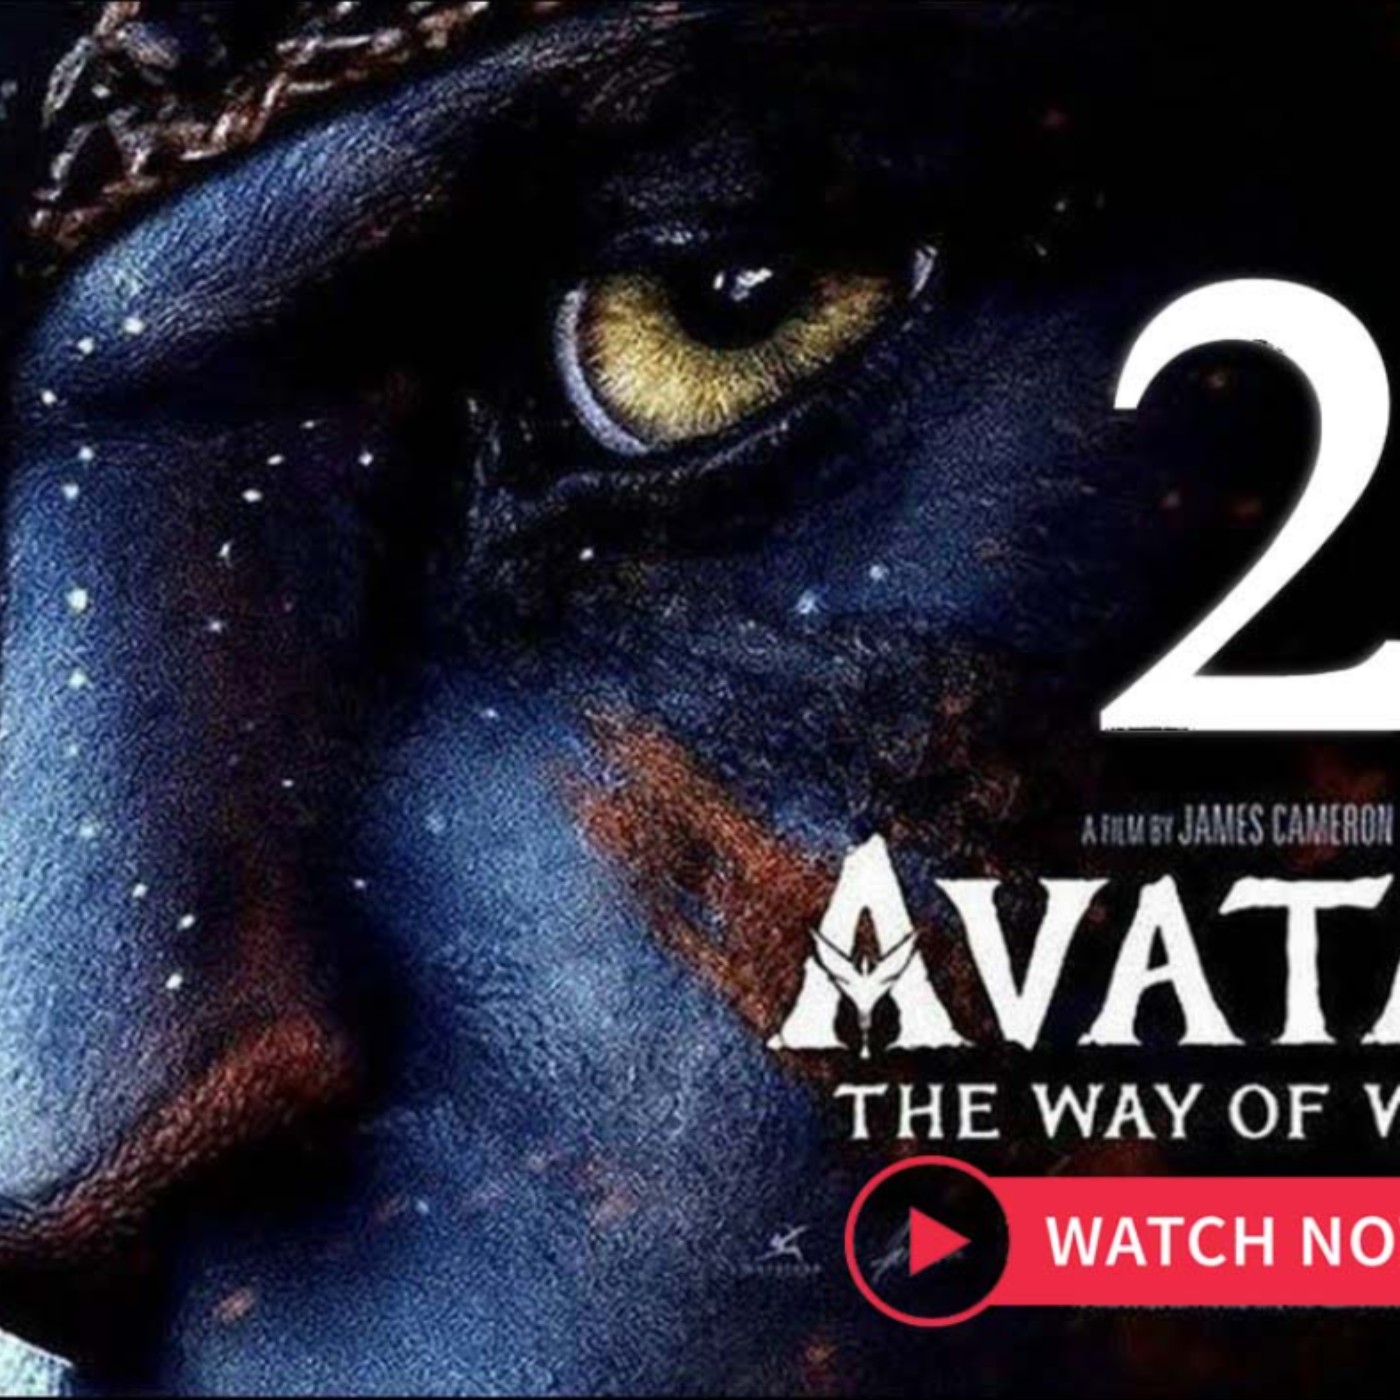 Avatar  Full Movie  Movies Anywhere